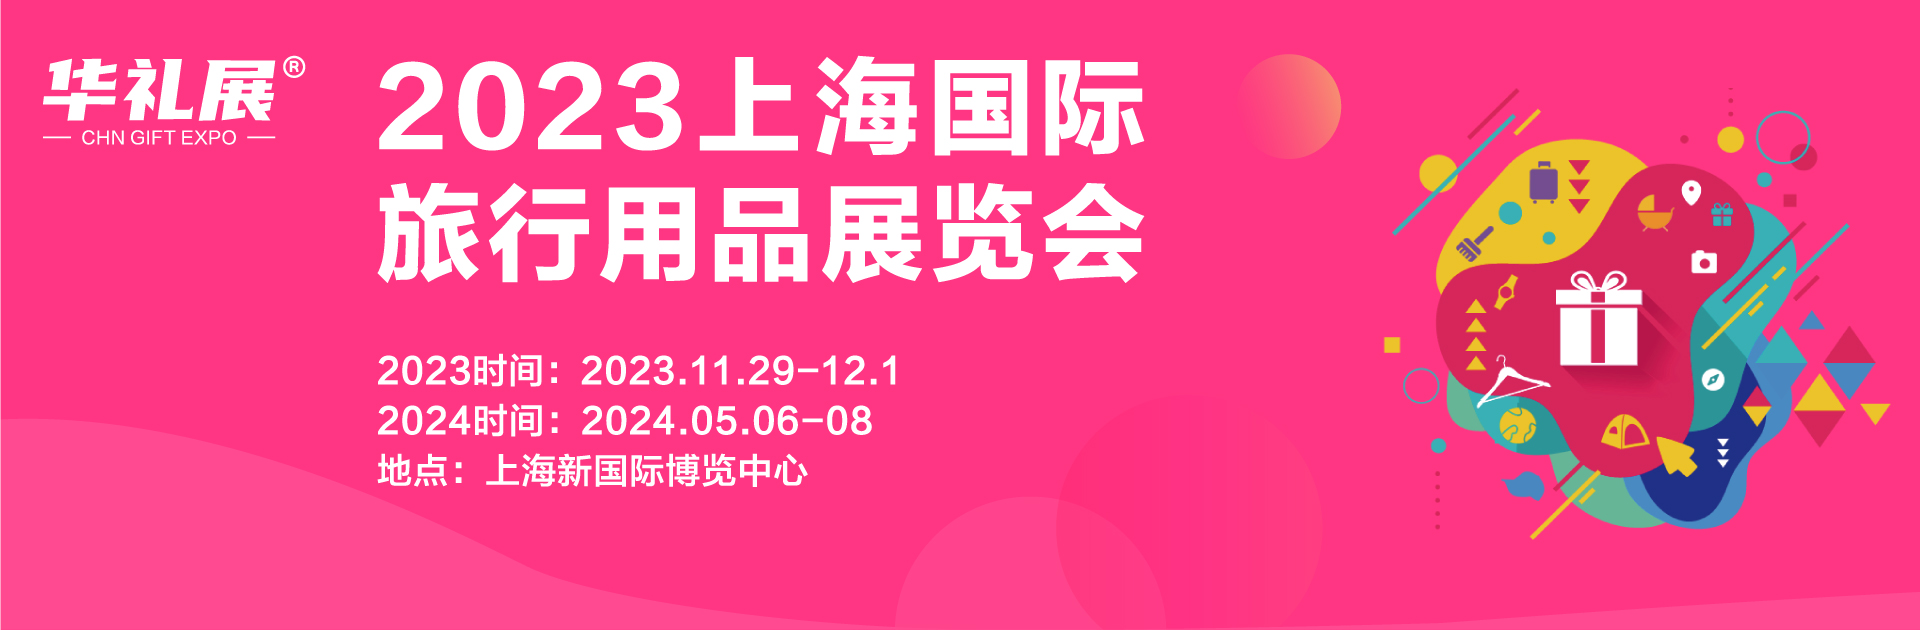  2023上海国际旅行用品展览会将于11月29在上海举办！